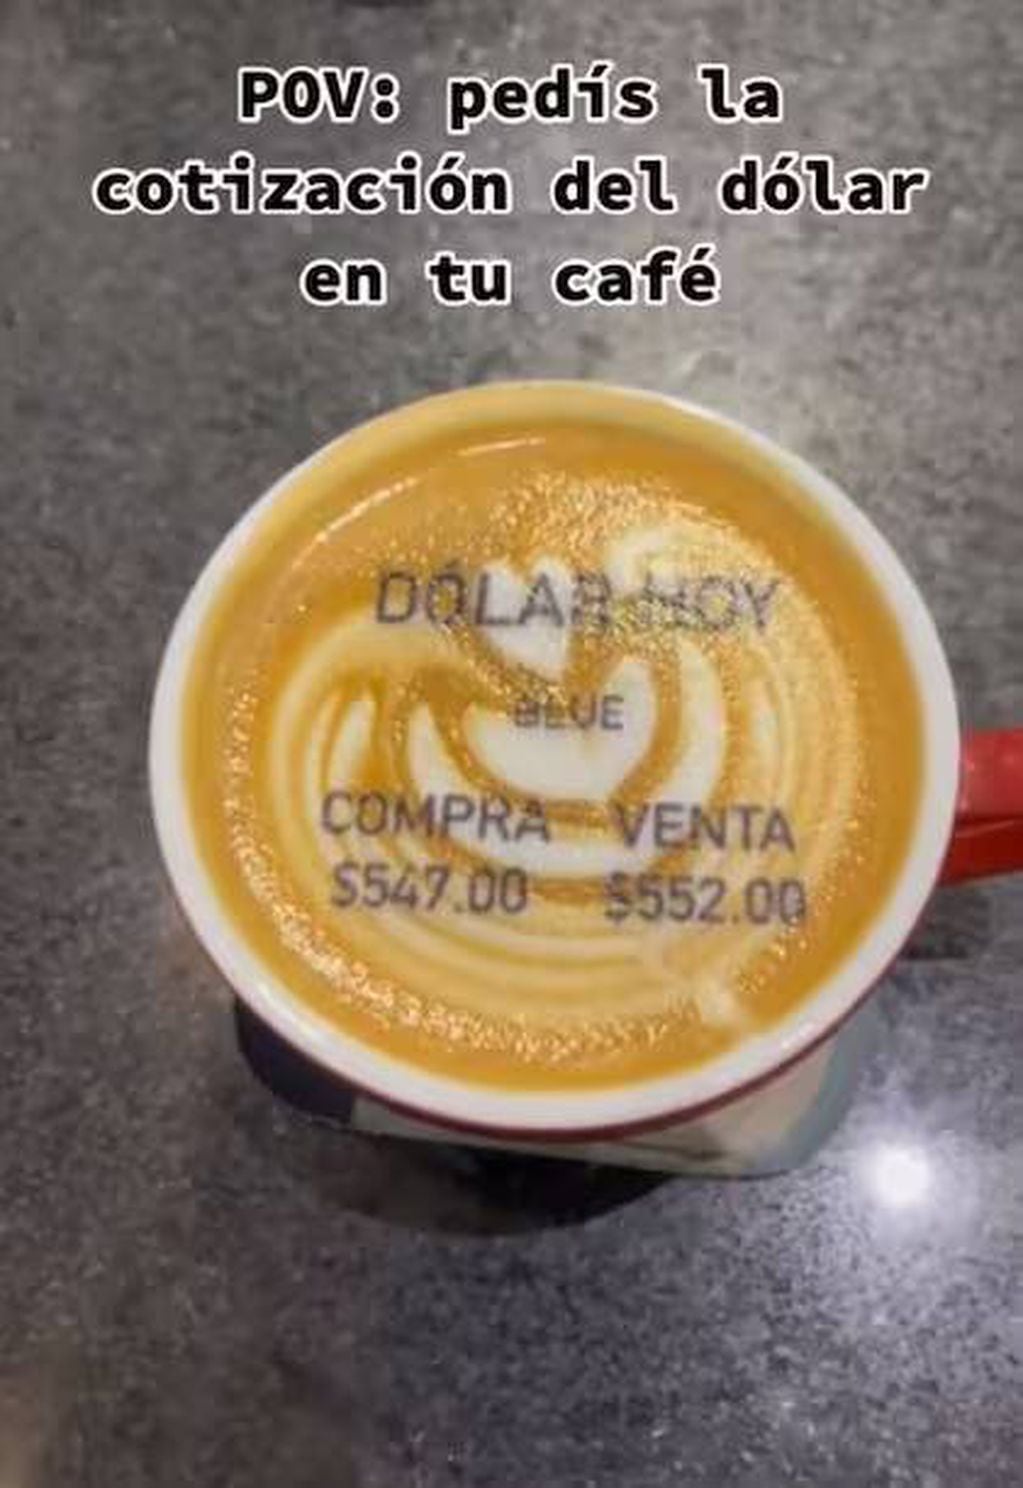 Café con la cotización del dólar blue impresa.